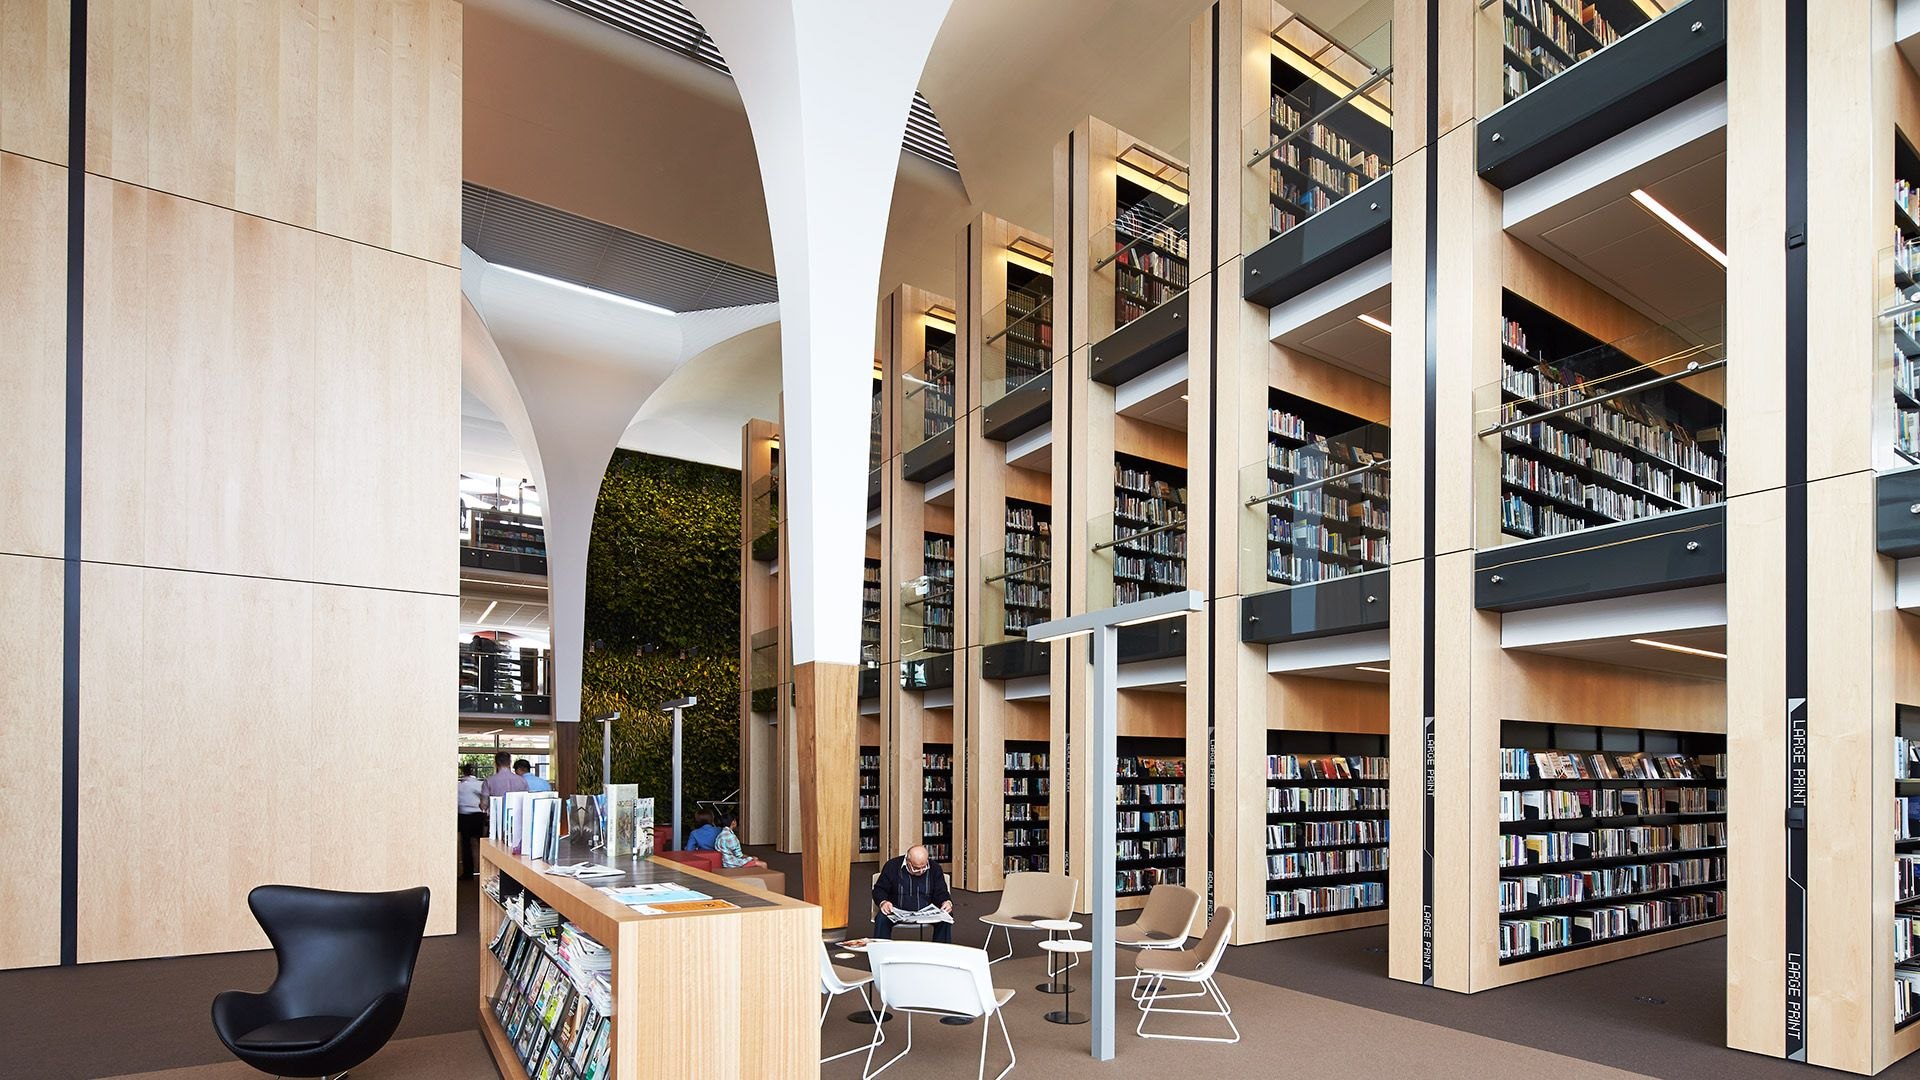 Attachment library. Центральная библиотека Лос-Анджелеса внутри. Библиотека Японии читальный зал. Интерьер современной библиотеки. Интерьер библиотеки публичной.